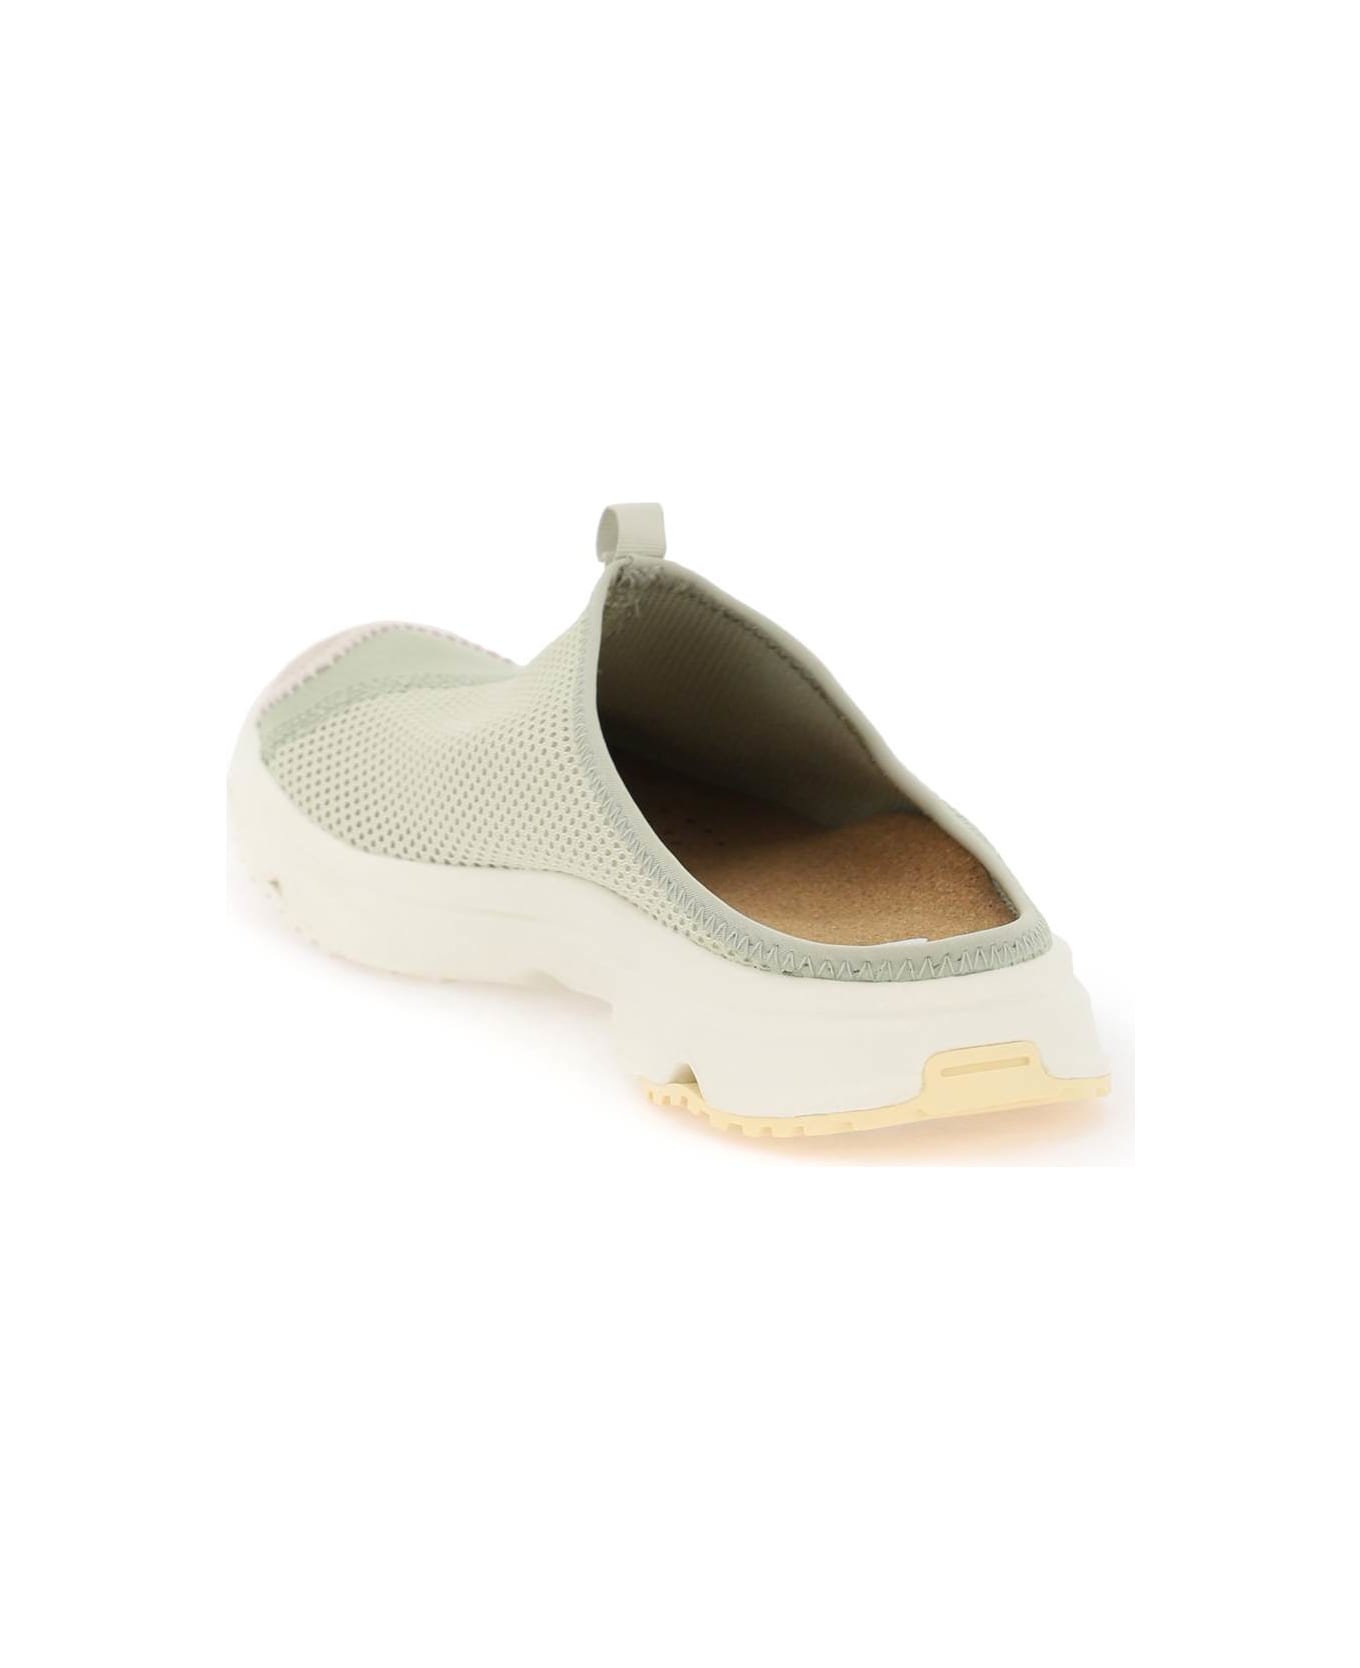 Salomon Rx Slide 3.0 Recovery Shoes - TEA ALFALFA GOLDEN FLEECE (Green)